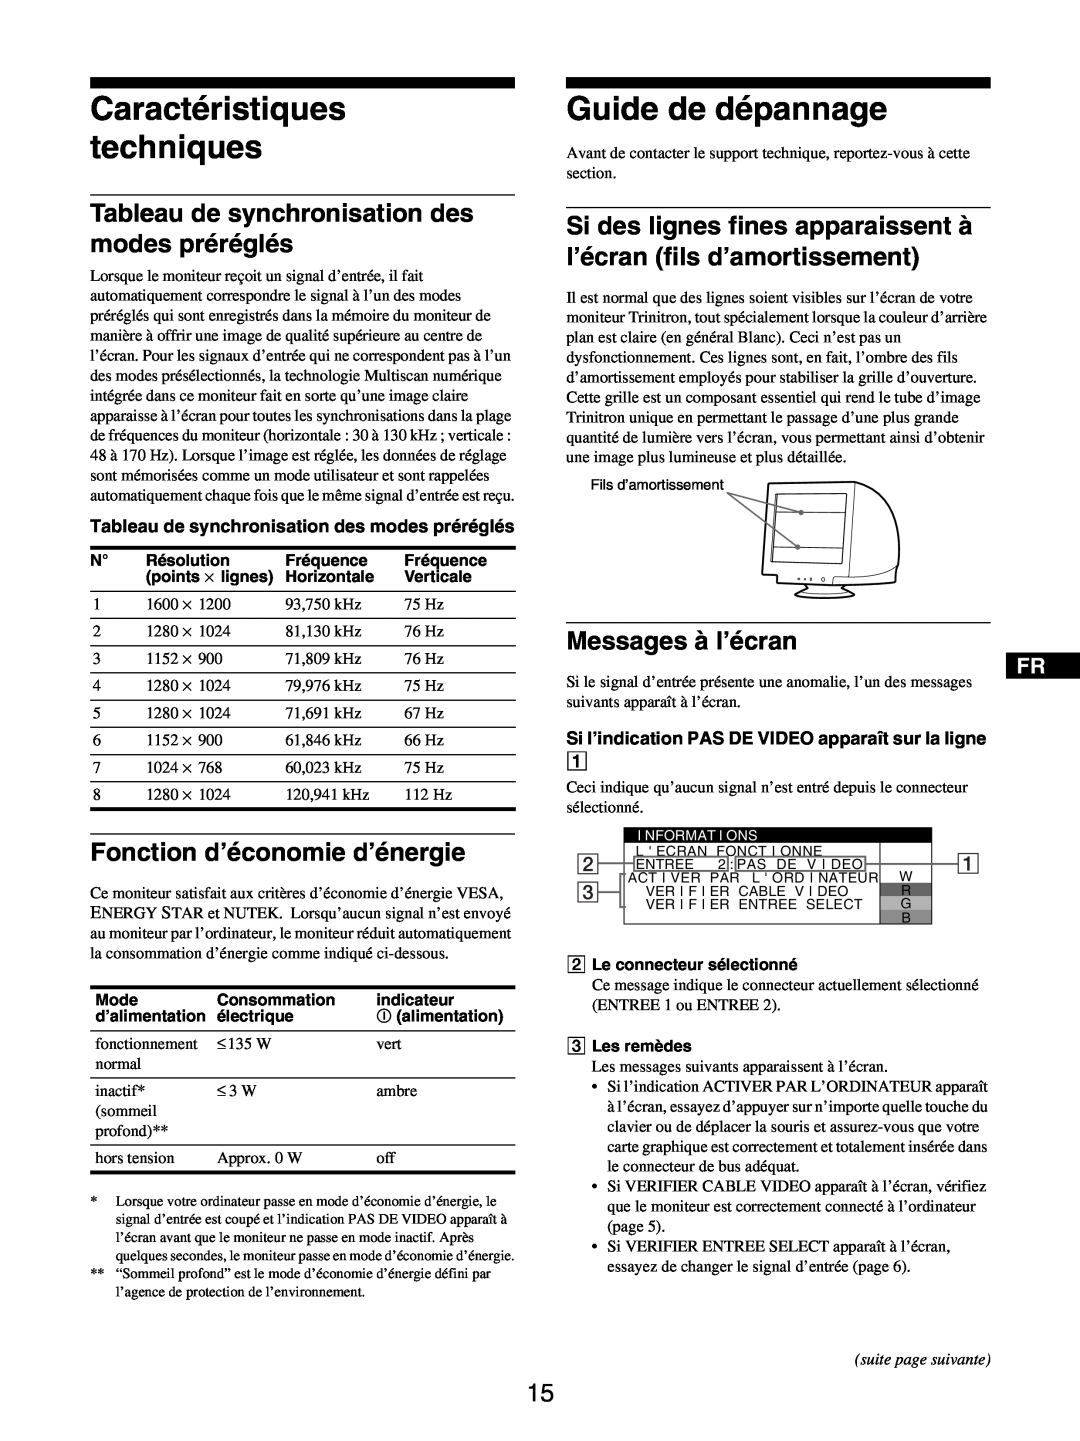 Sony GDM-5510 Caractéristiques techniques, Guide de dépannage, Tableau de synchronisation des modes préréglés 